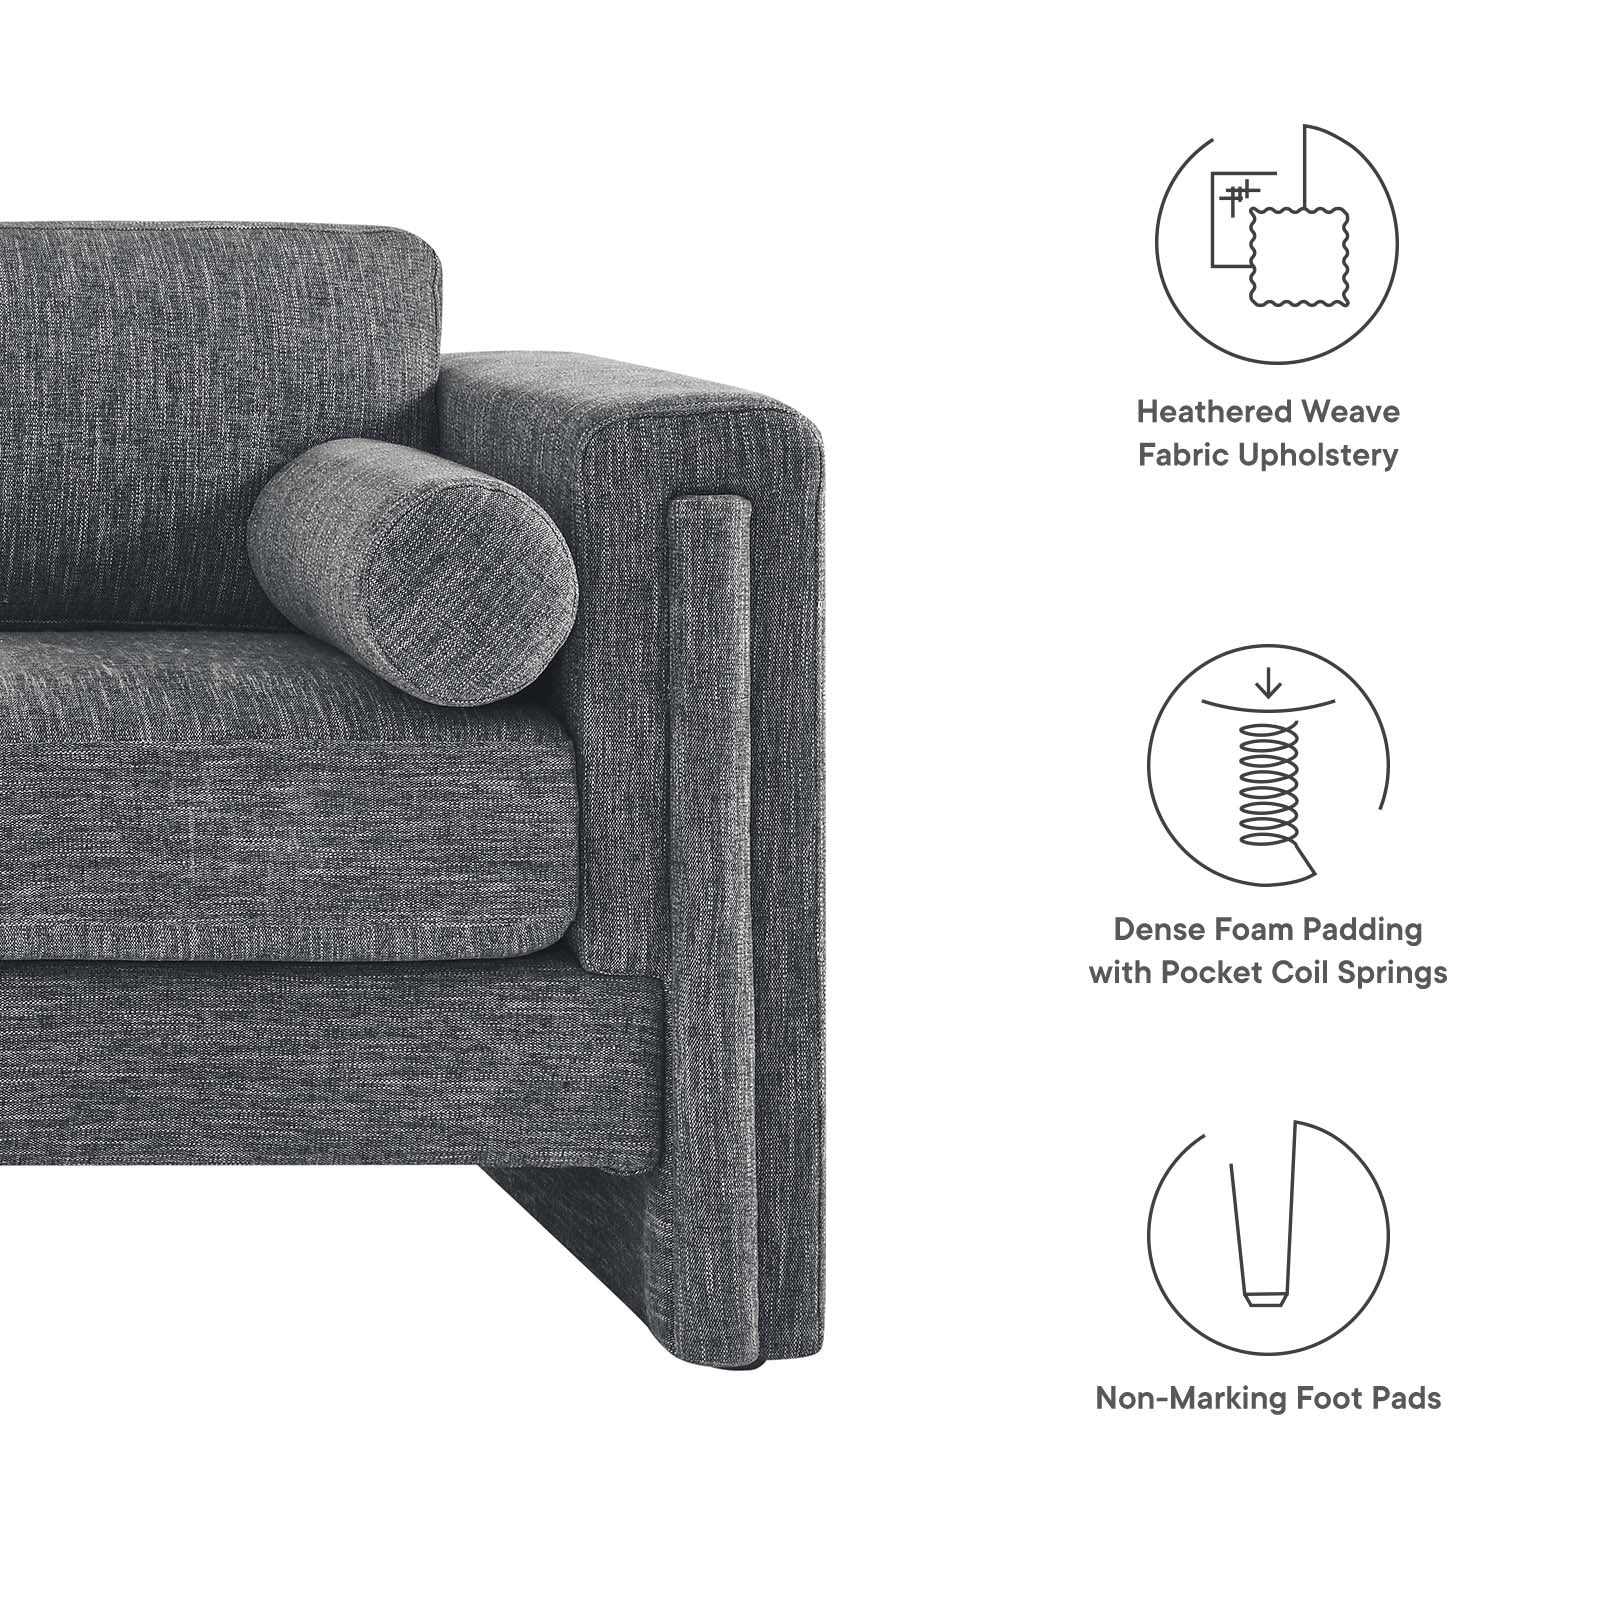 Visible Fabric Sofa-Sofa-Modway-Wall2Wall Furnishings